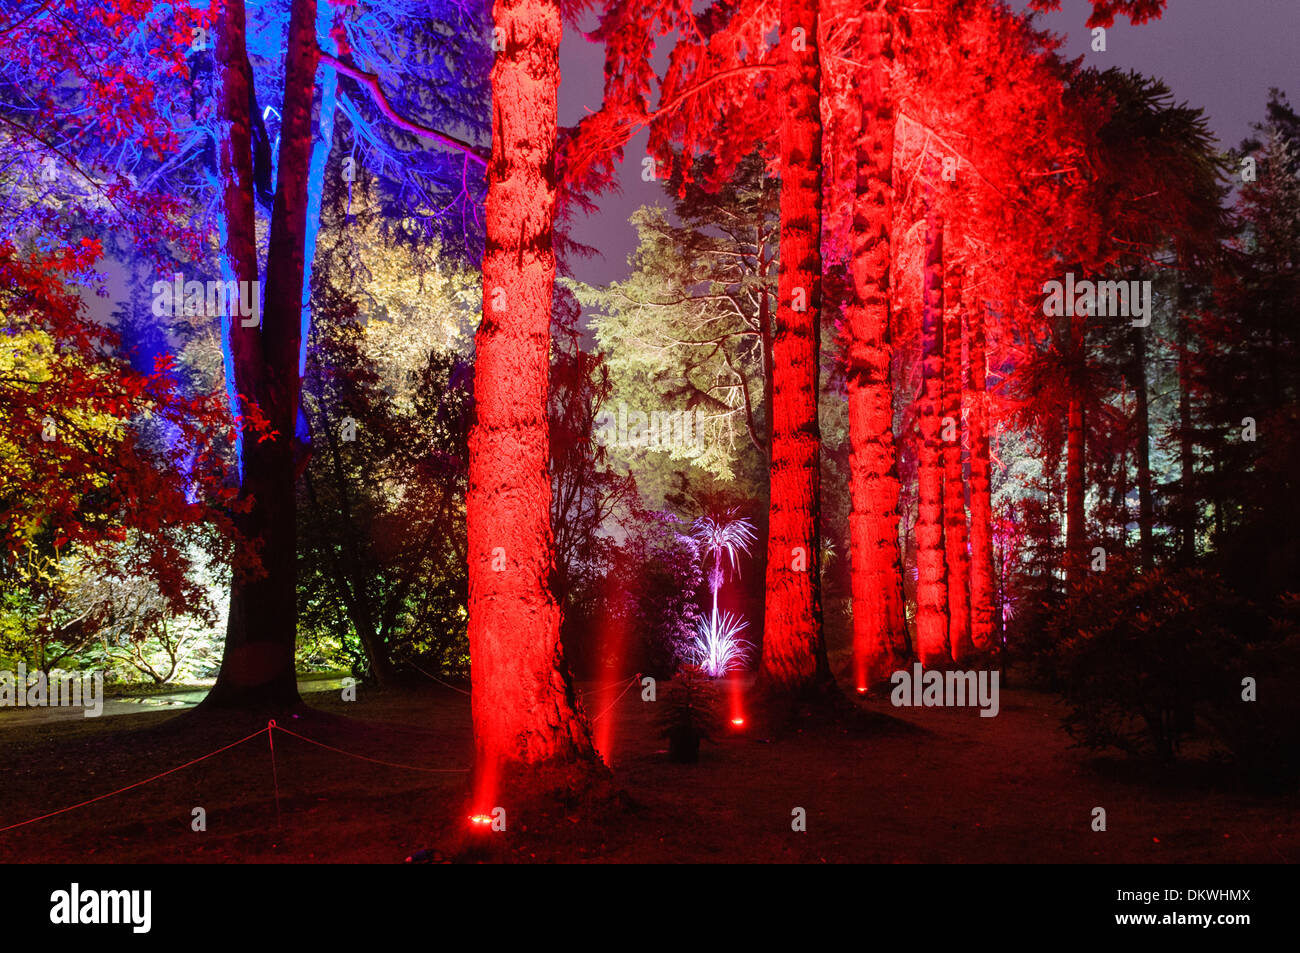 Tronchi di alberi in una foresta, illuminato con luce rossa Foto Stock